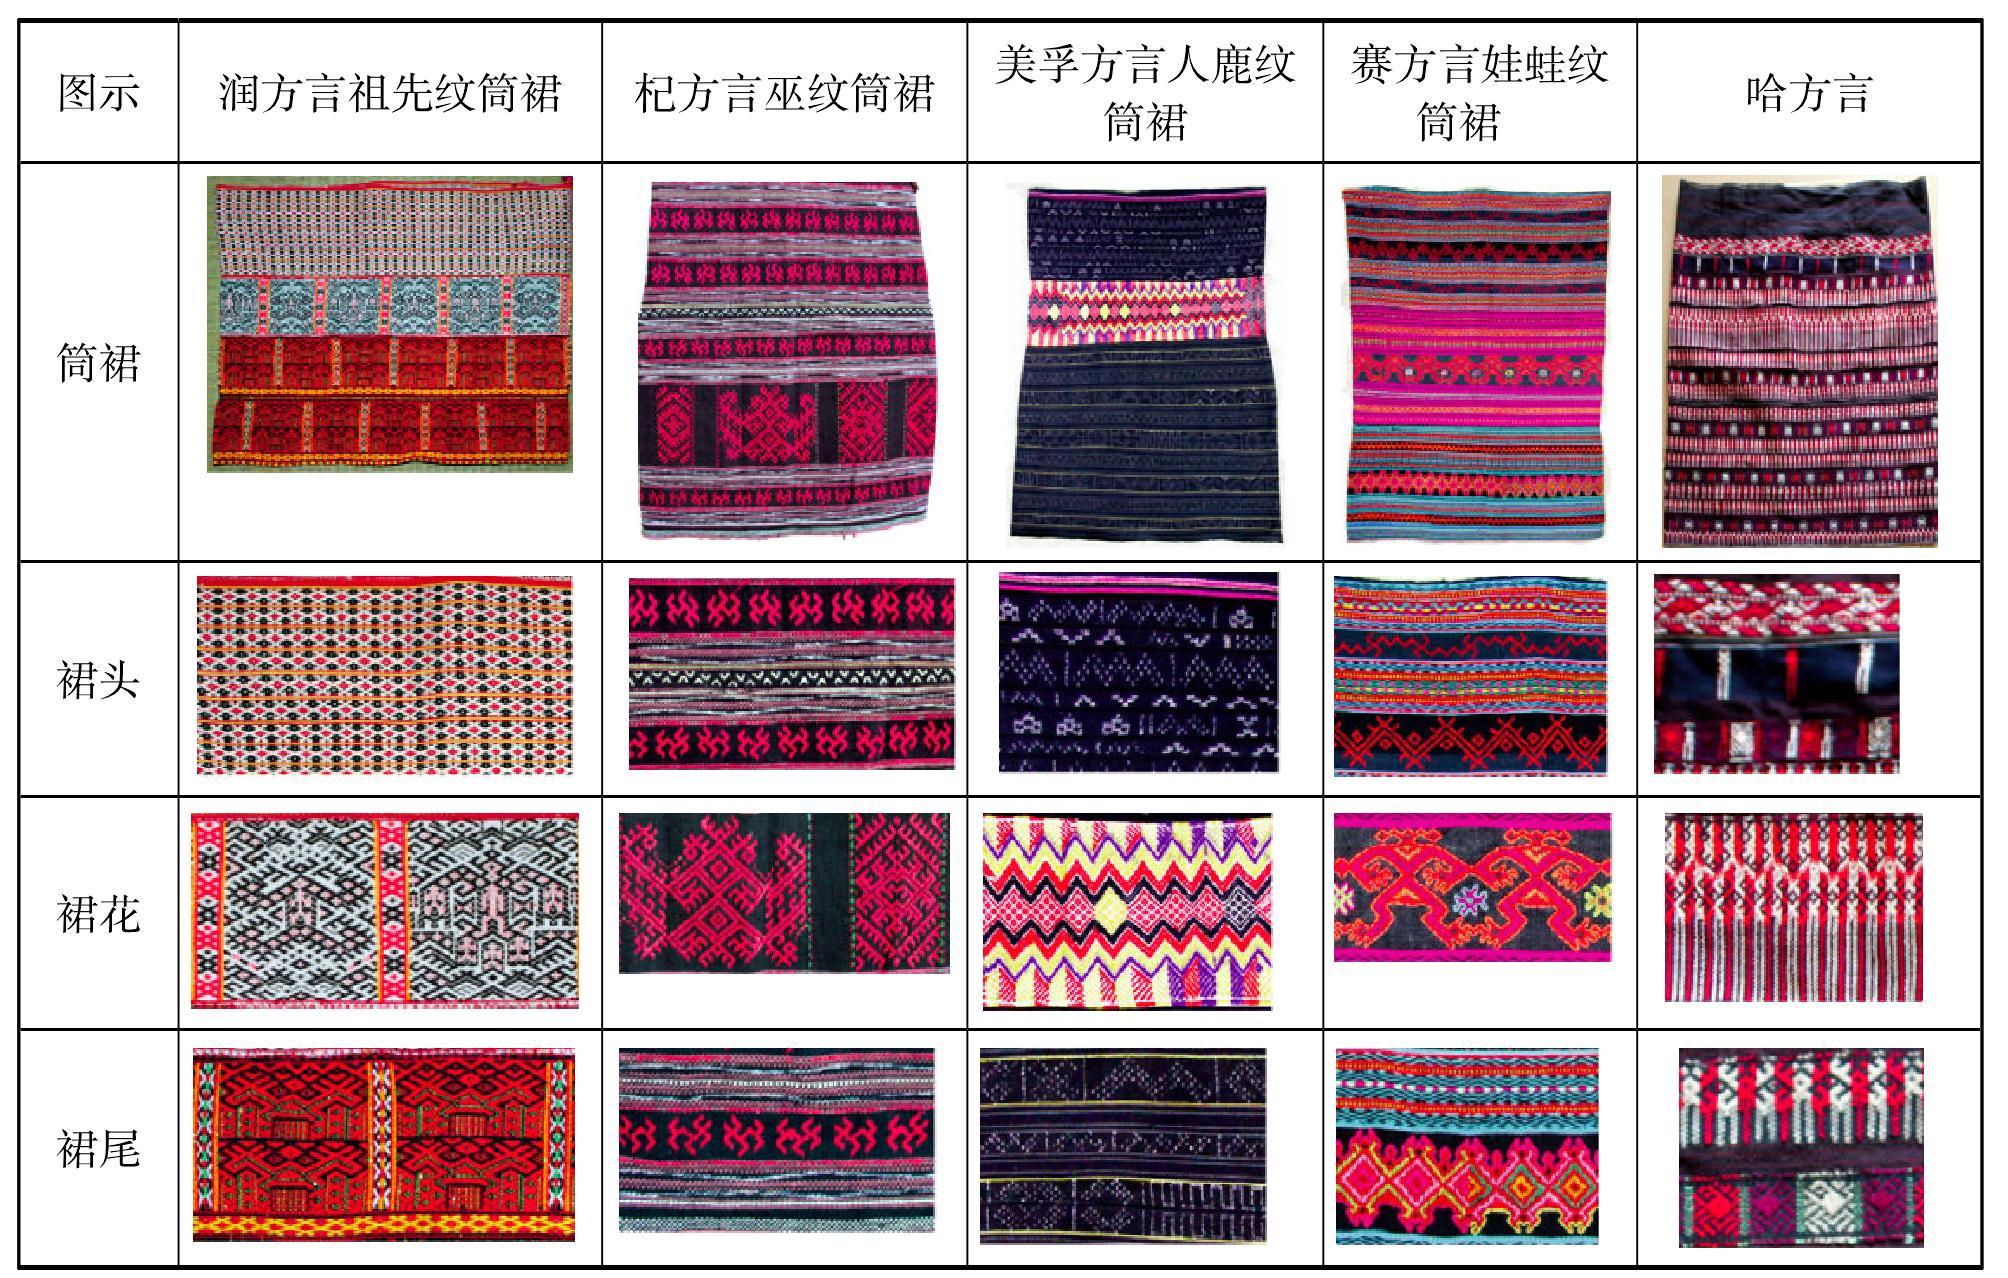 第四节 黎族传统织绣图案的装饰语言在服饰和织物图案上的表现